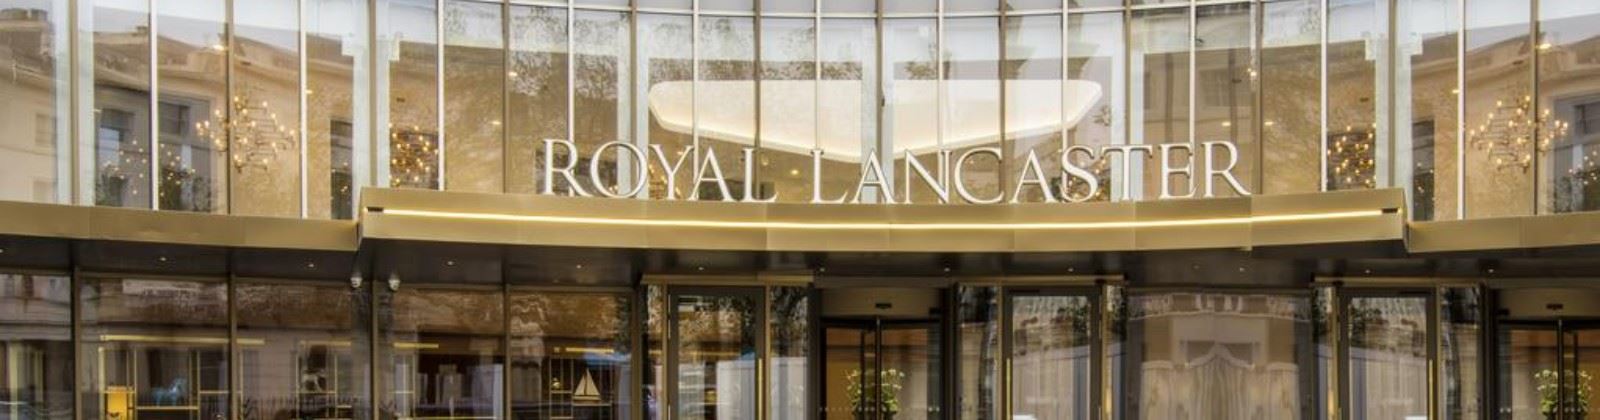 royal lancaster london olevene agence 